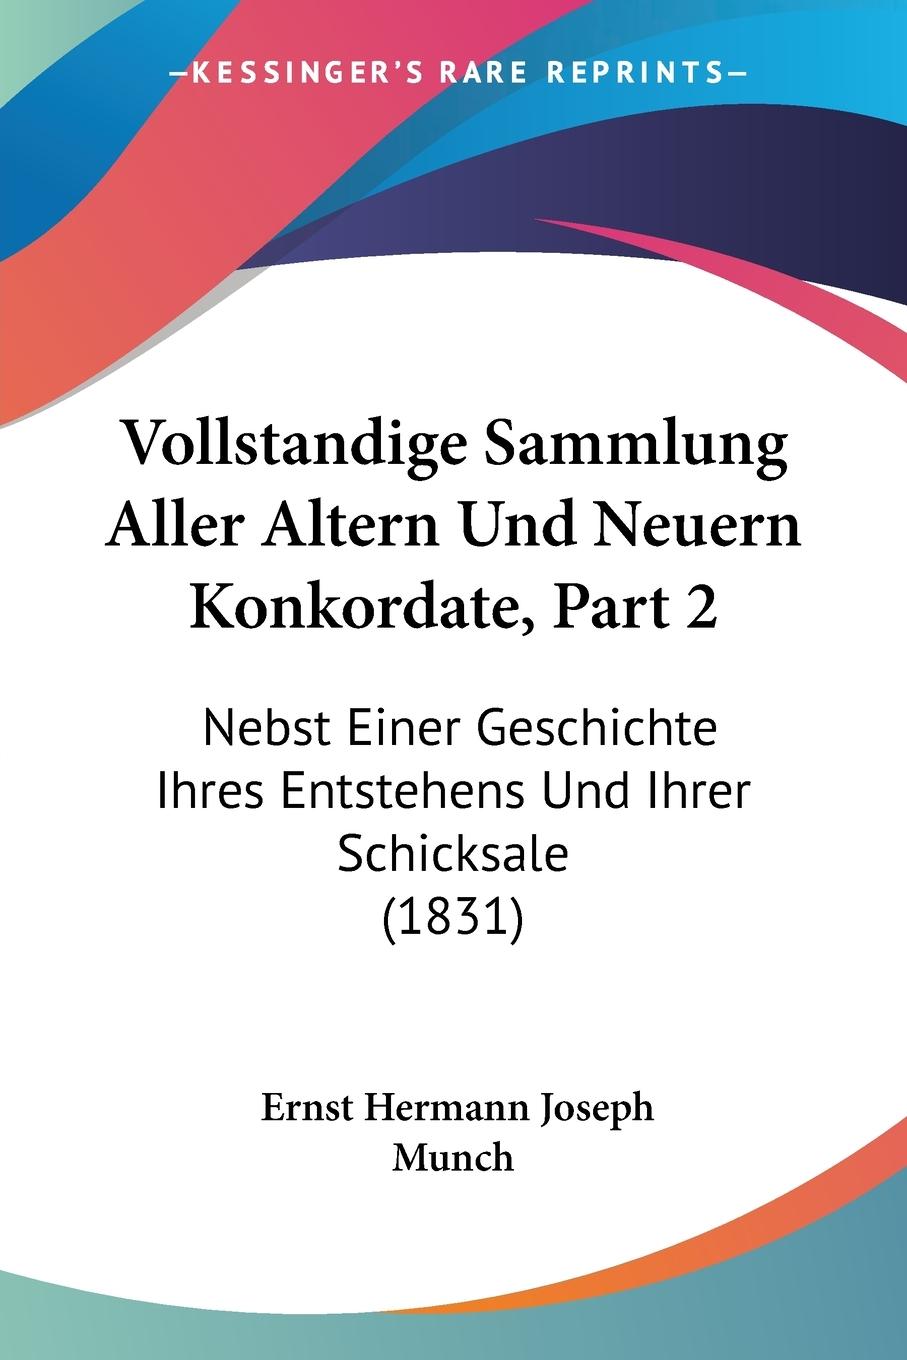 Vollstandige Sammlung Aller Altern Und Neuern Konkordate, Part 2 - Munch, Ernst Hermann Joseph